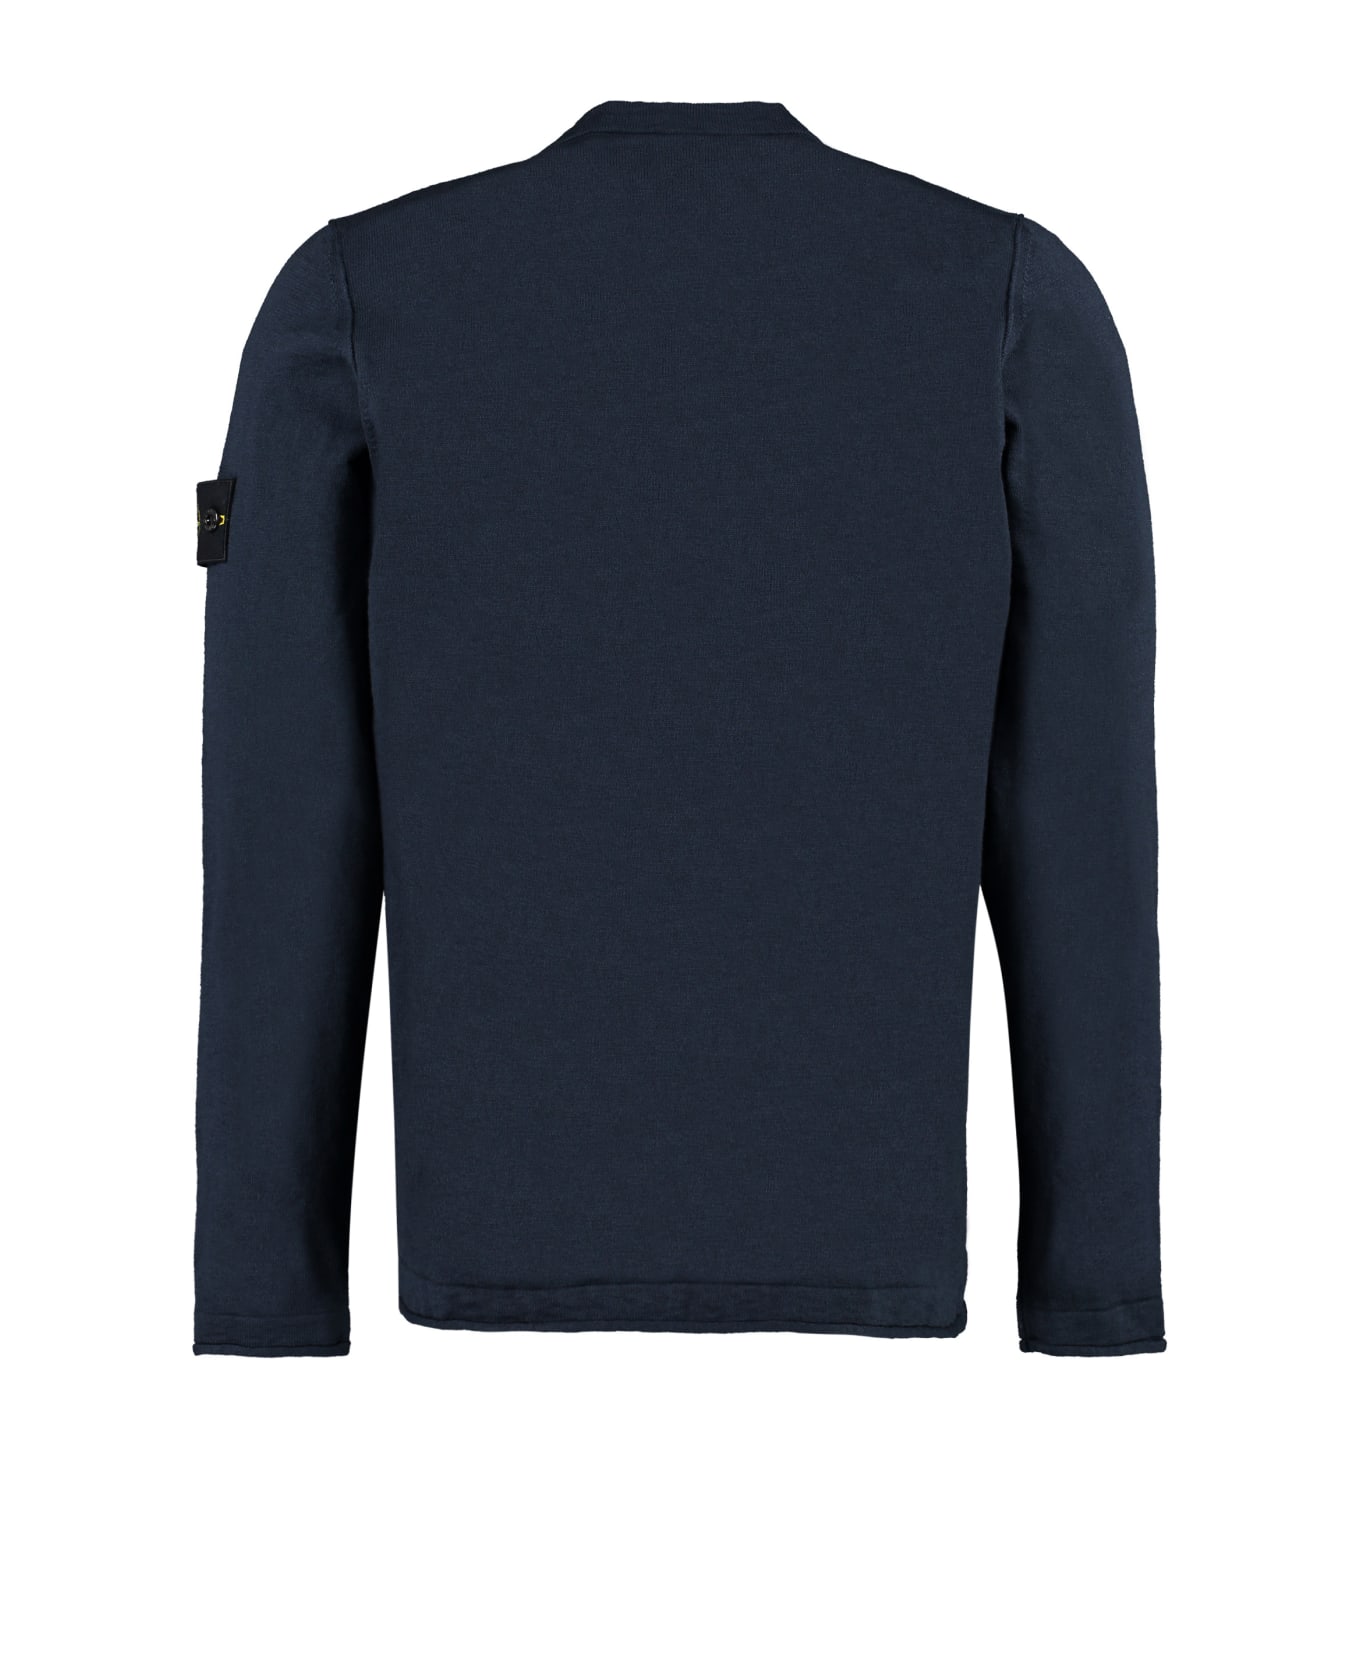 Stone Island Long Sleeve Crew-neck Sweater - blue ニットウェア